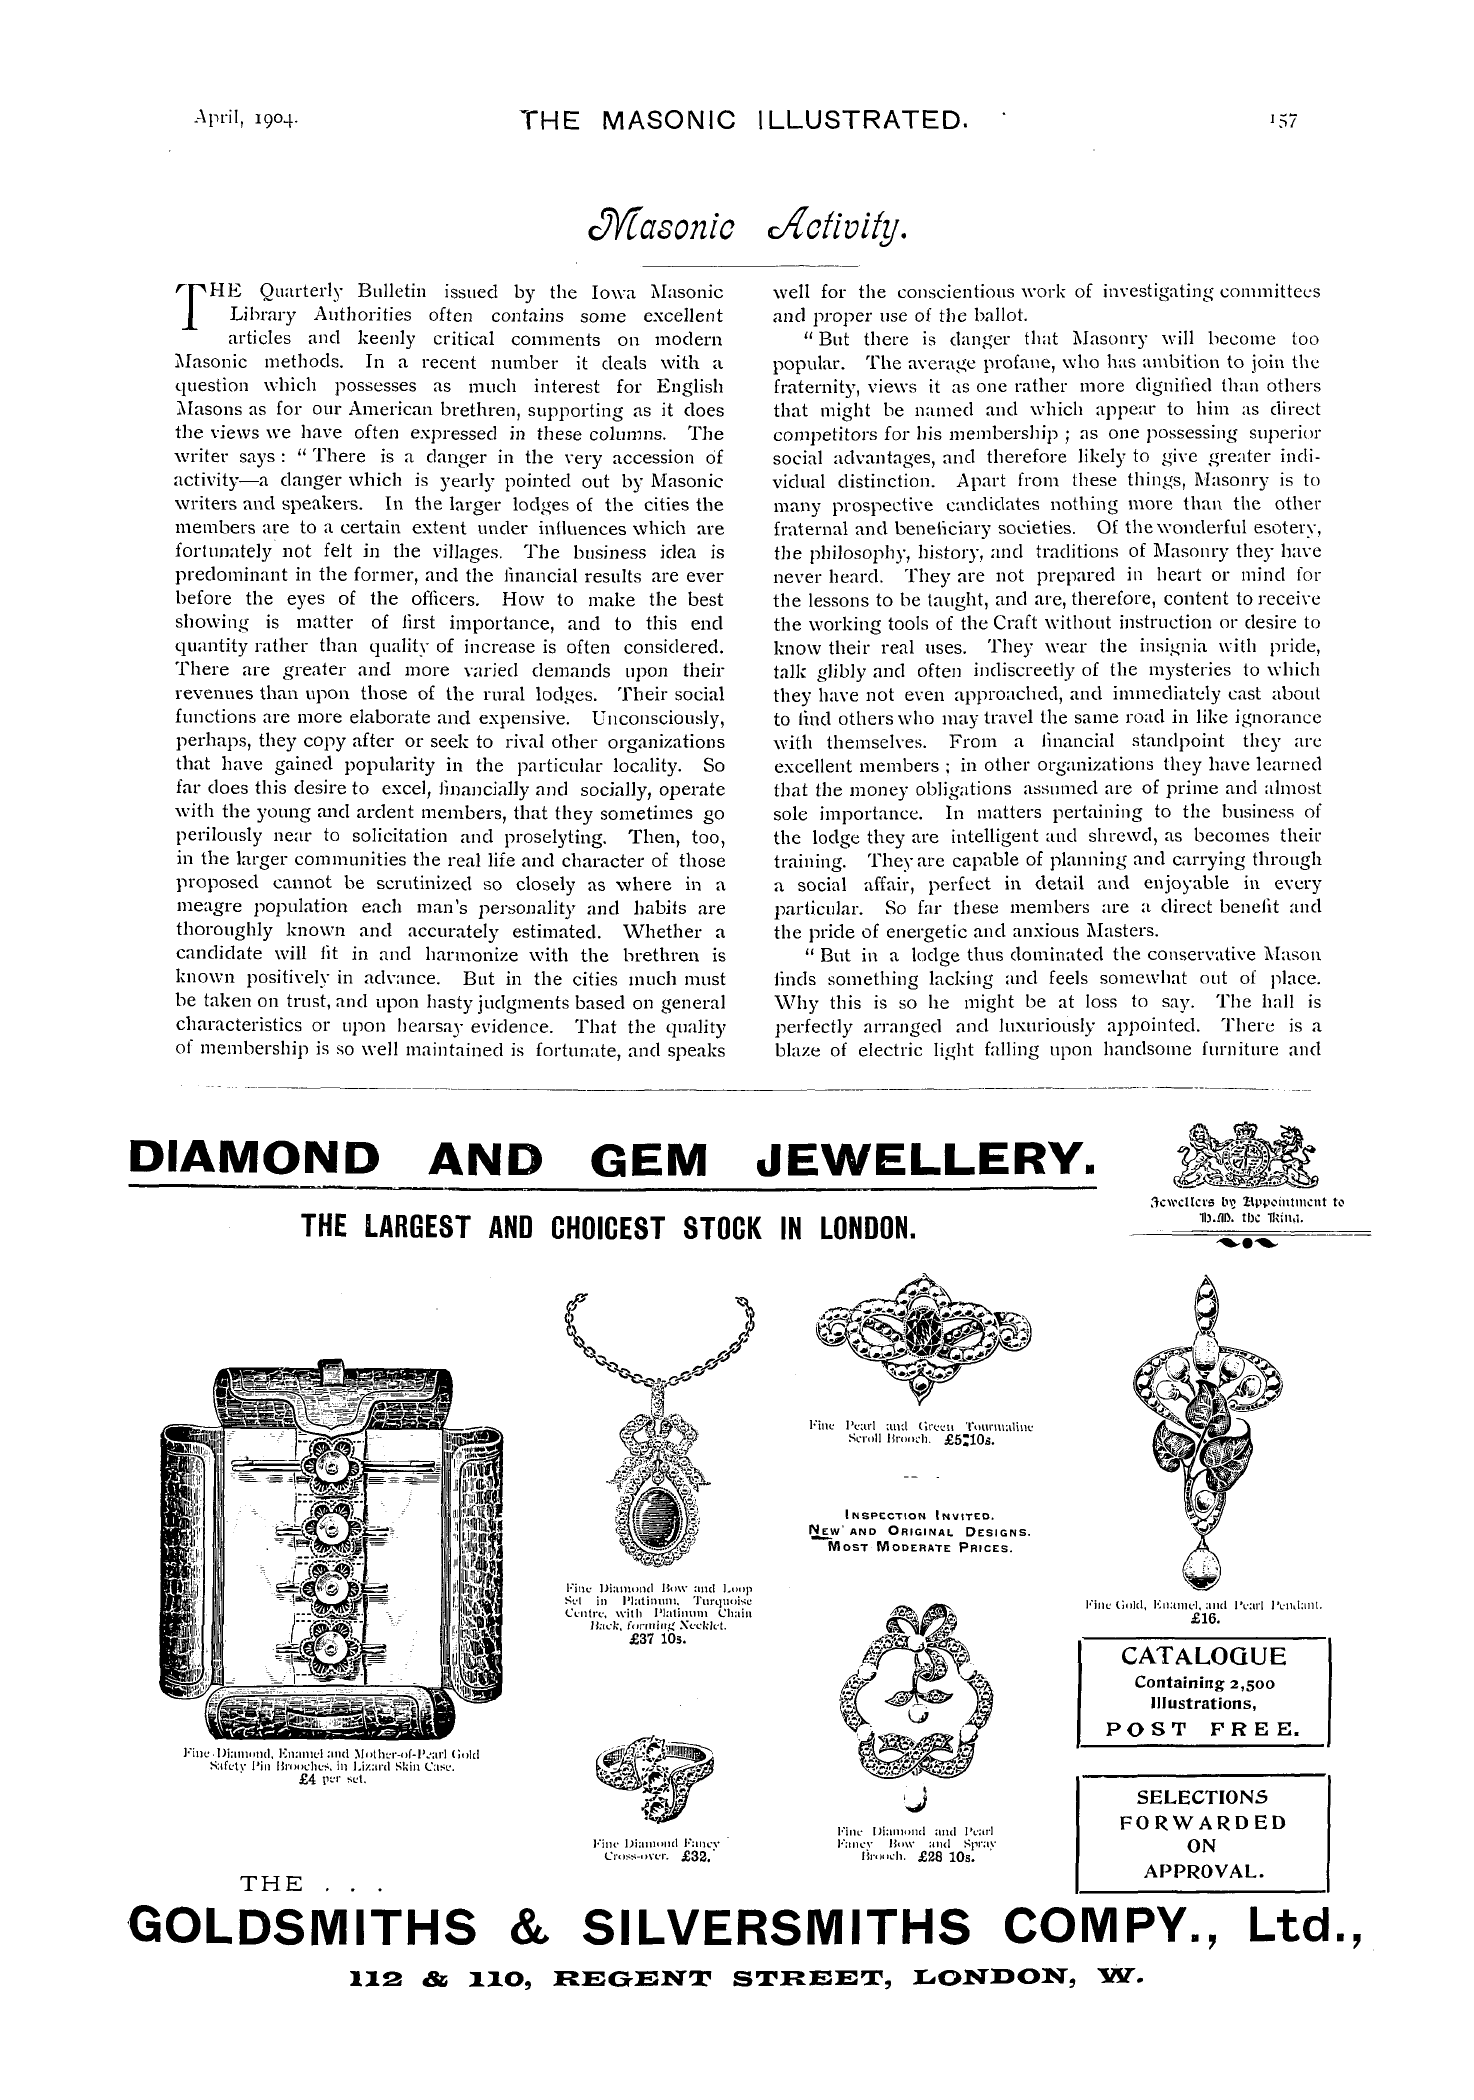 The Masonic Illustrated: 1904-04-01 - Masonic Activity.